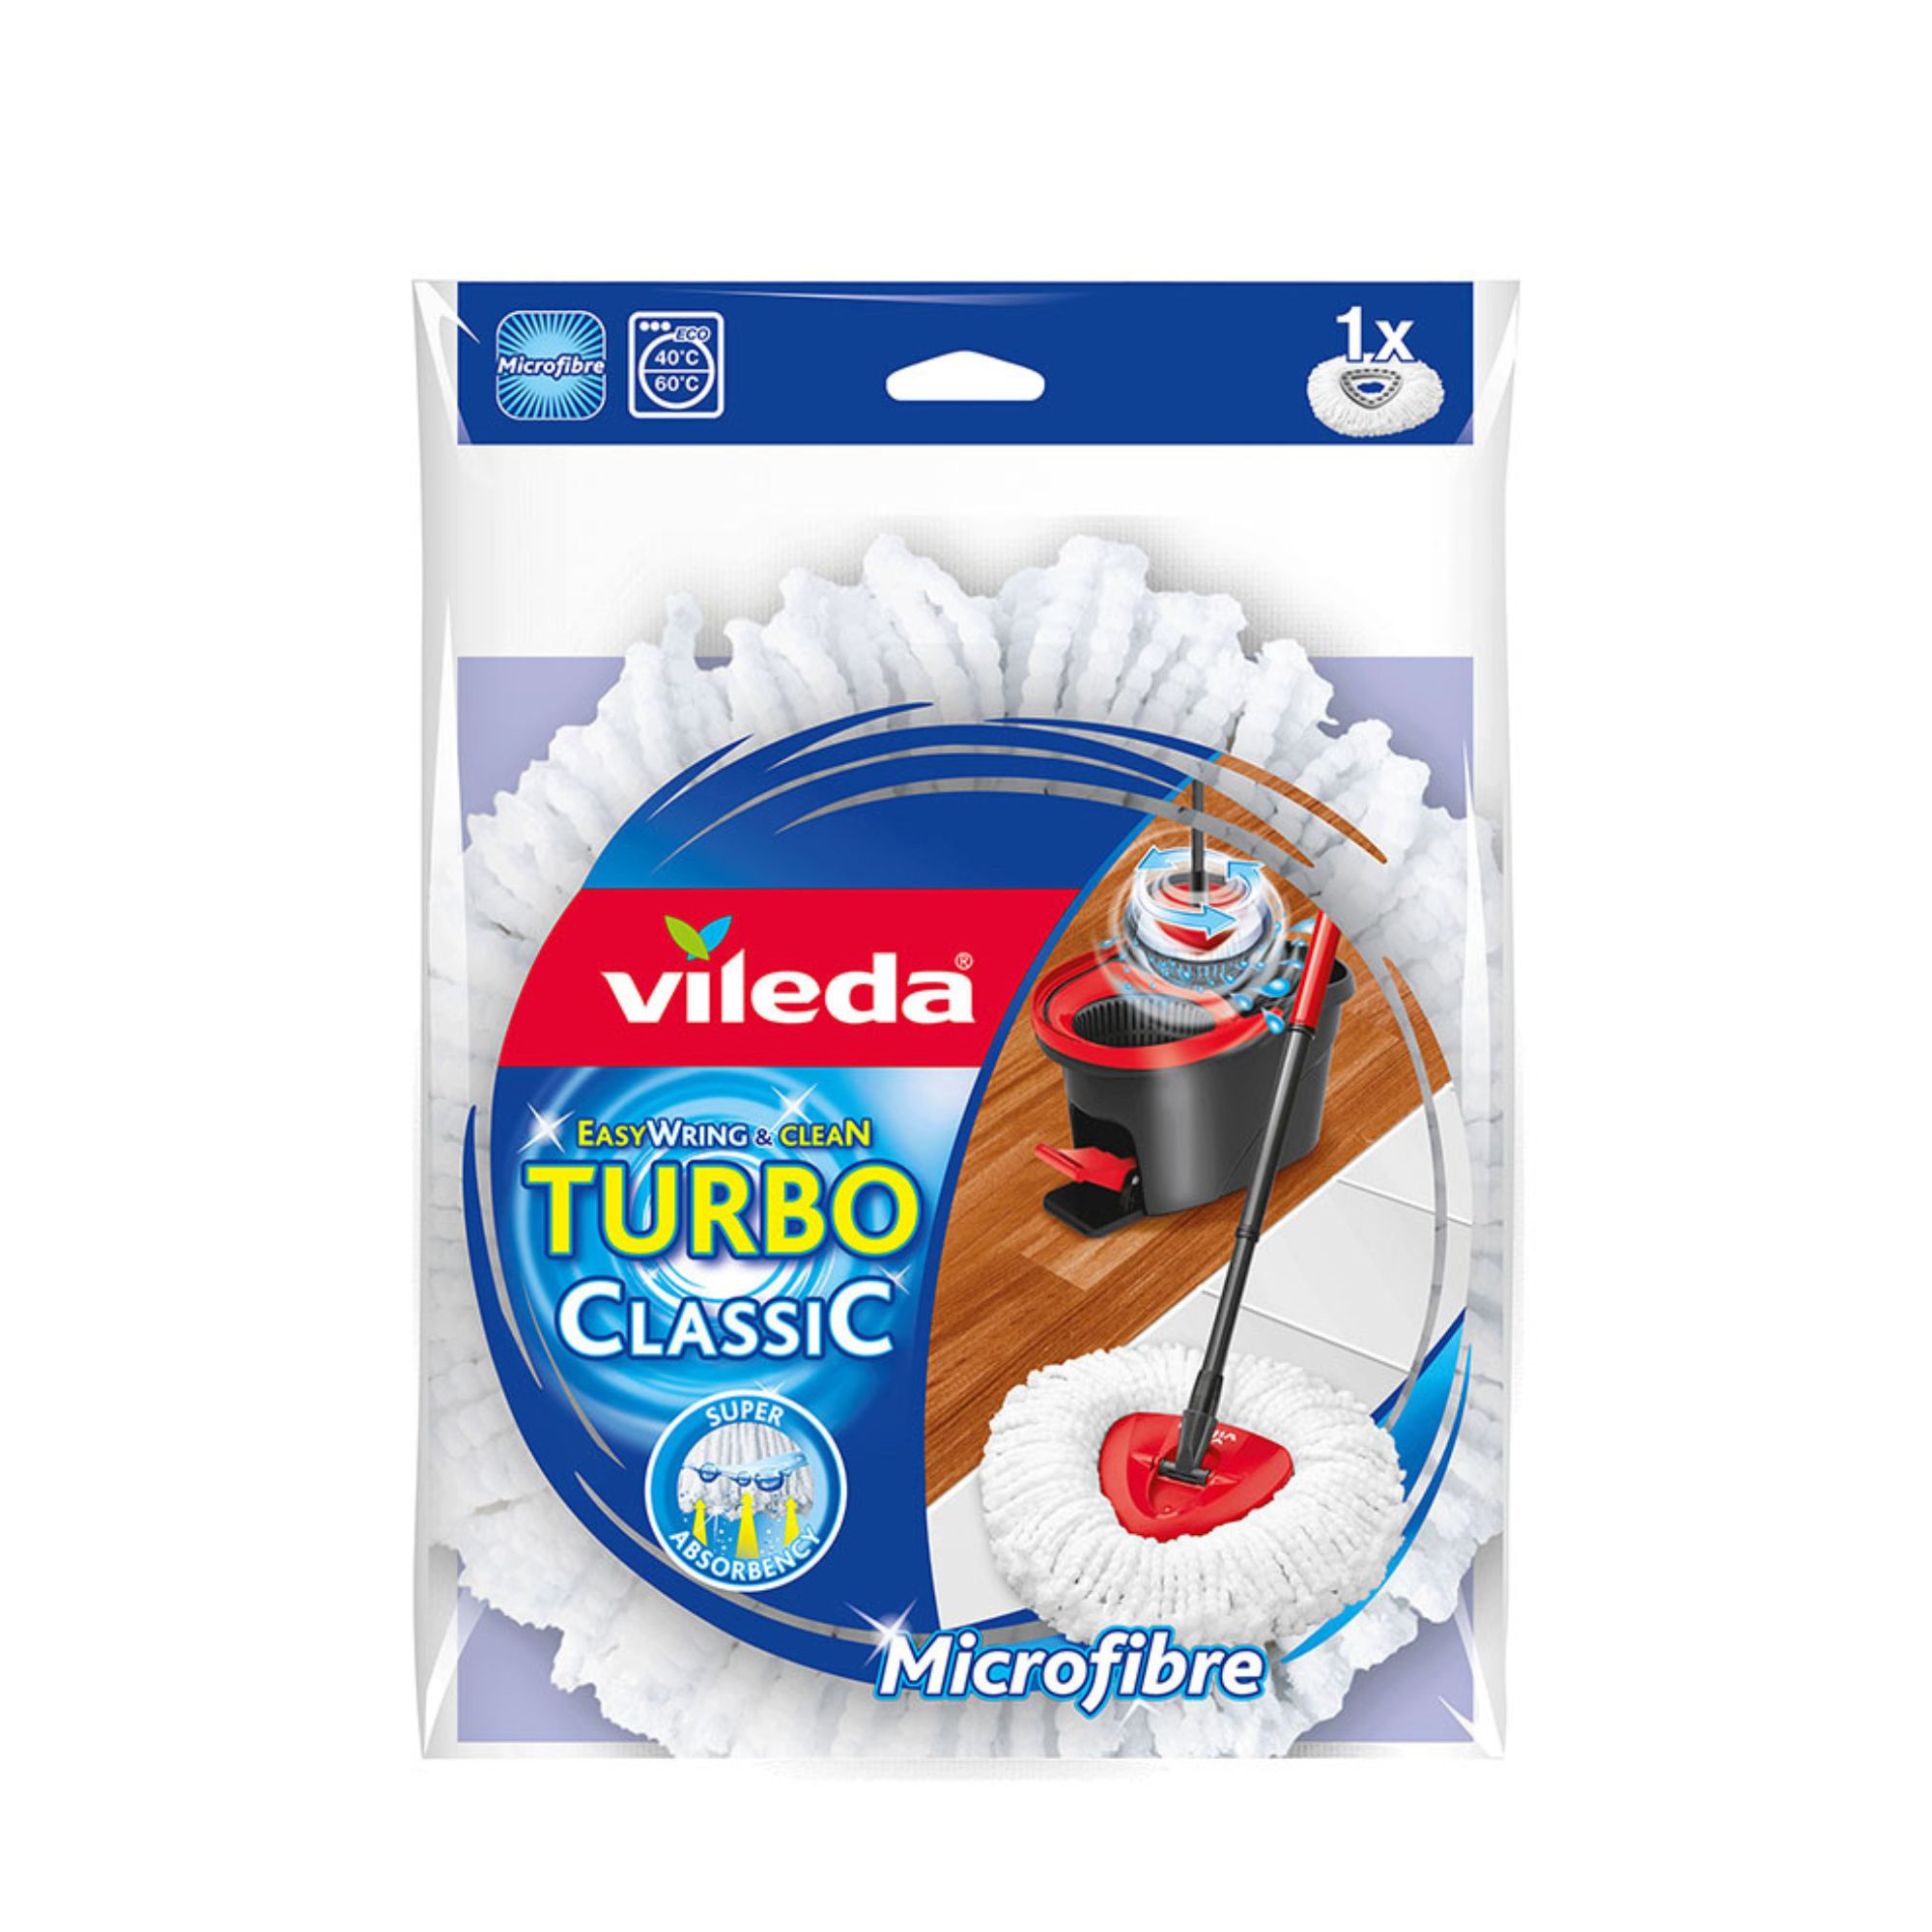 Sobresselente turbo classic 167740 Vileda